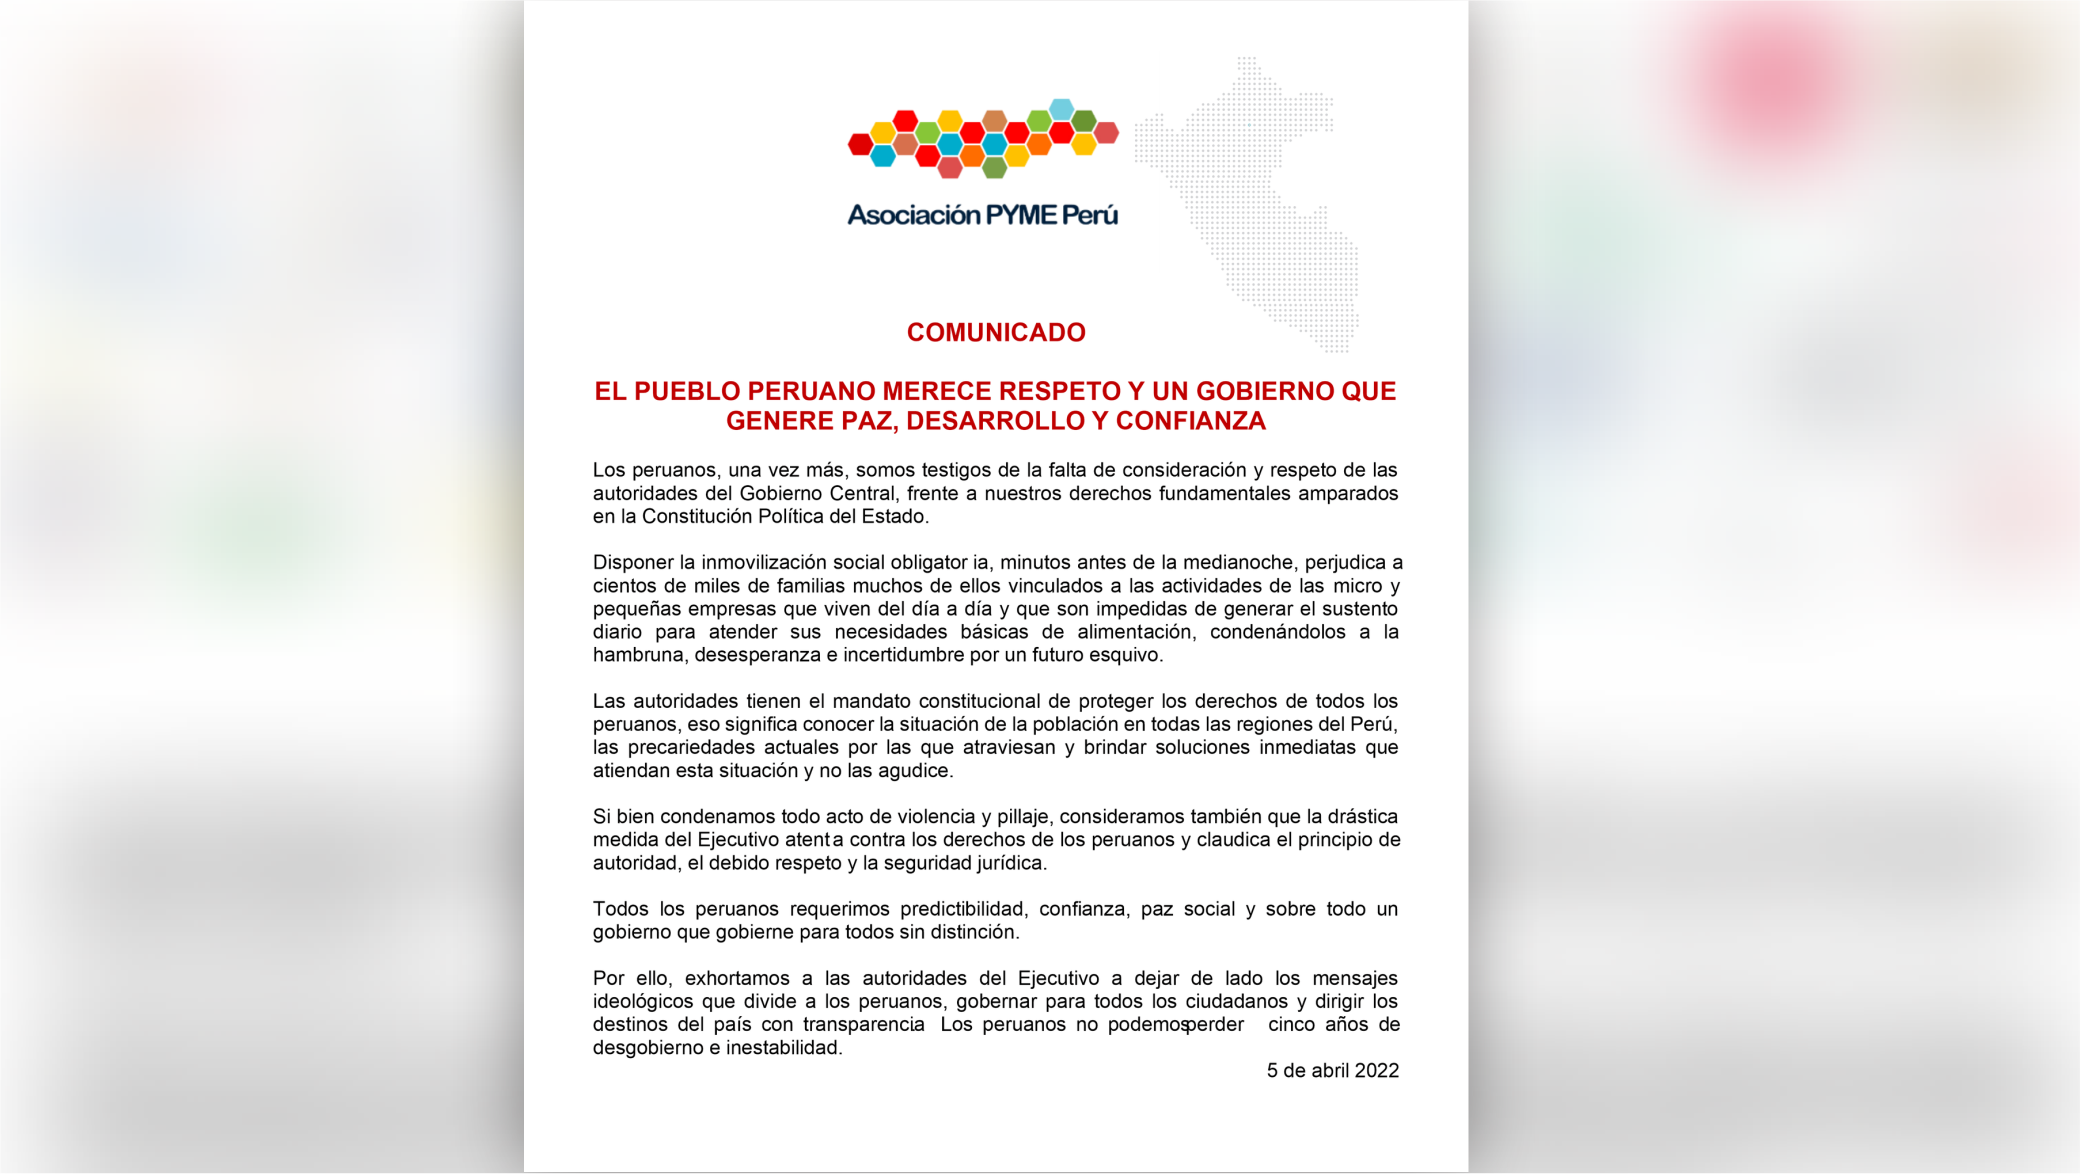 URGENTE: MEDIDA DICTADA POR EL EJECUTIVO ATENTA CONTRA LOS DERECHOS DE LOS PERUANOS